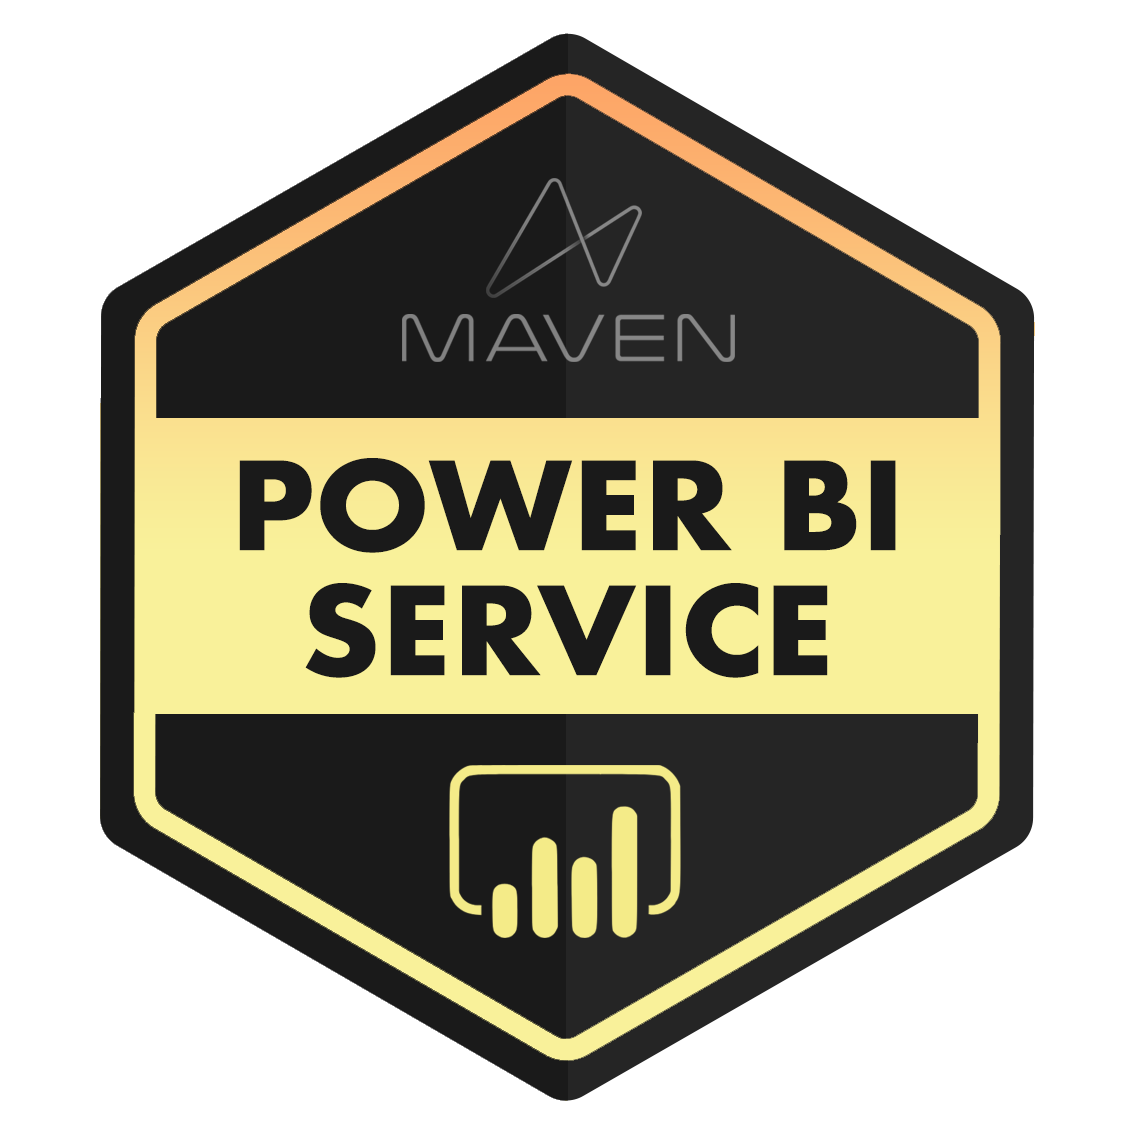 Power BI Service